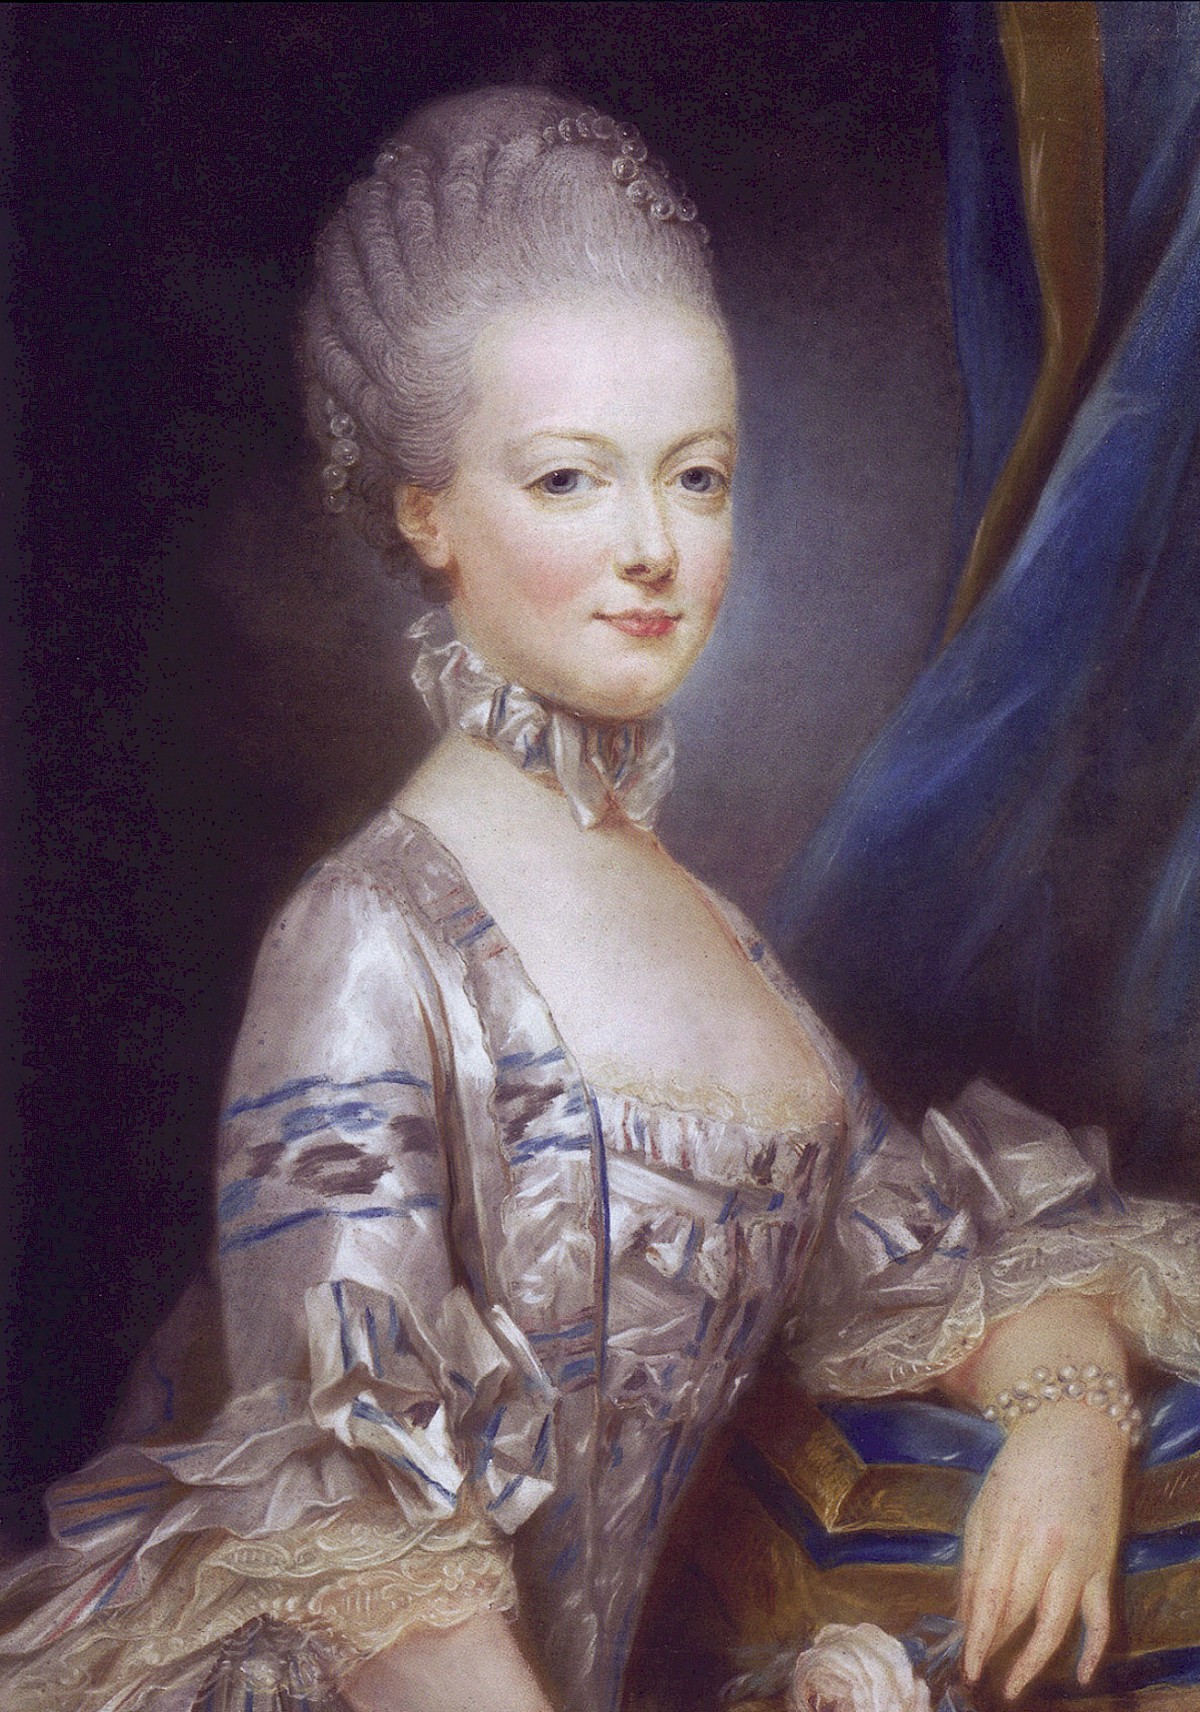 ماري أنطوانيت: من الولادة حتى الإعدام، مرورًا بالمليكة - النمساوية الجميلة التي أصبحت ملكةً لفرنسا - دعهم يأكلون الكعك - فرنسيس الأول 